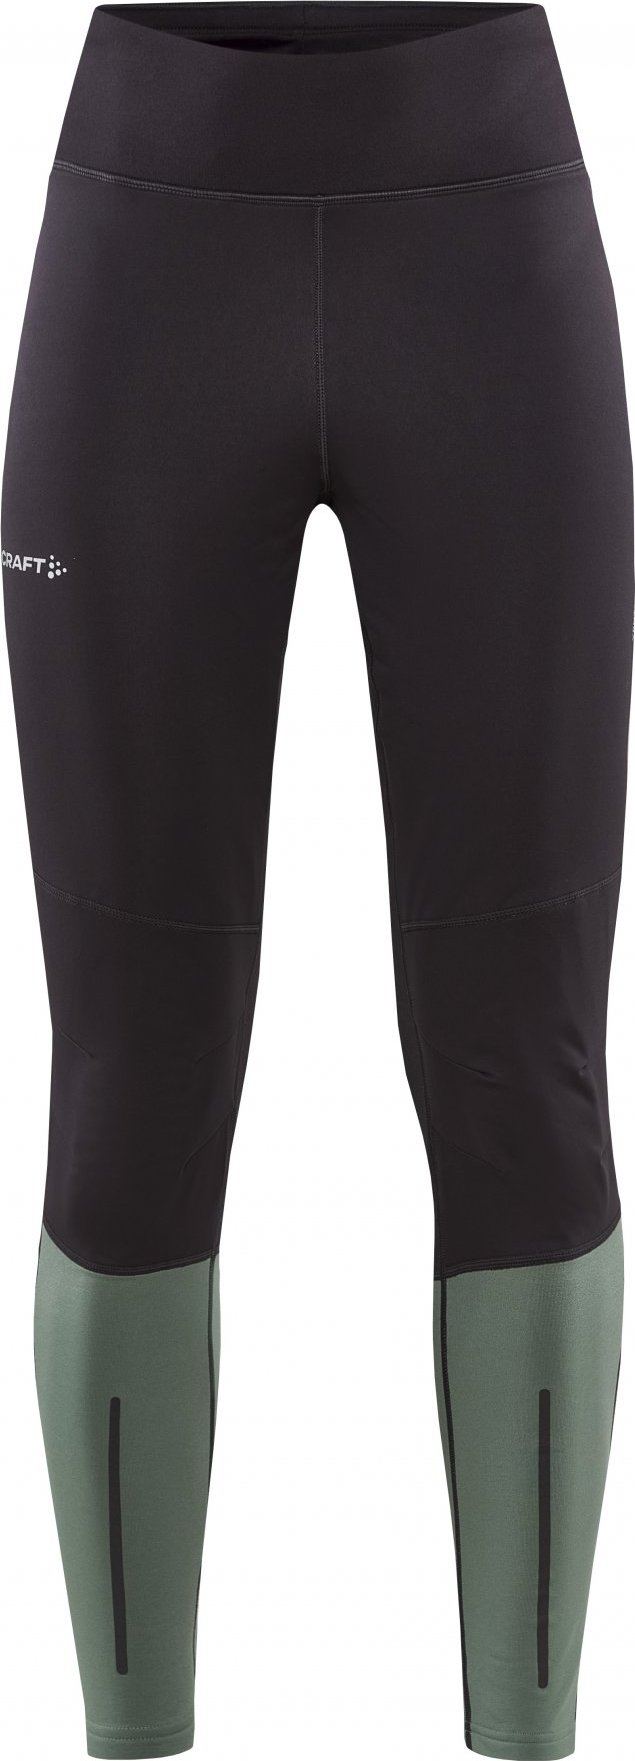 Dámské elastické kalhoty CRAFT Adv Essence Wind Tights šedé Velikost: XS